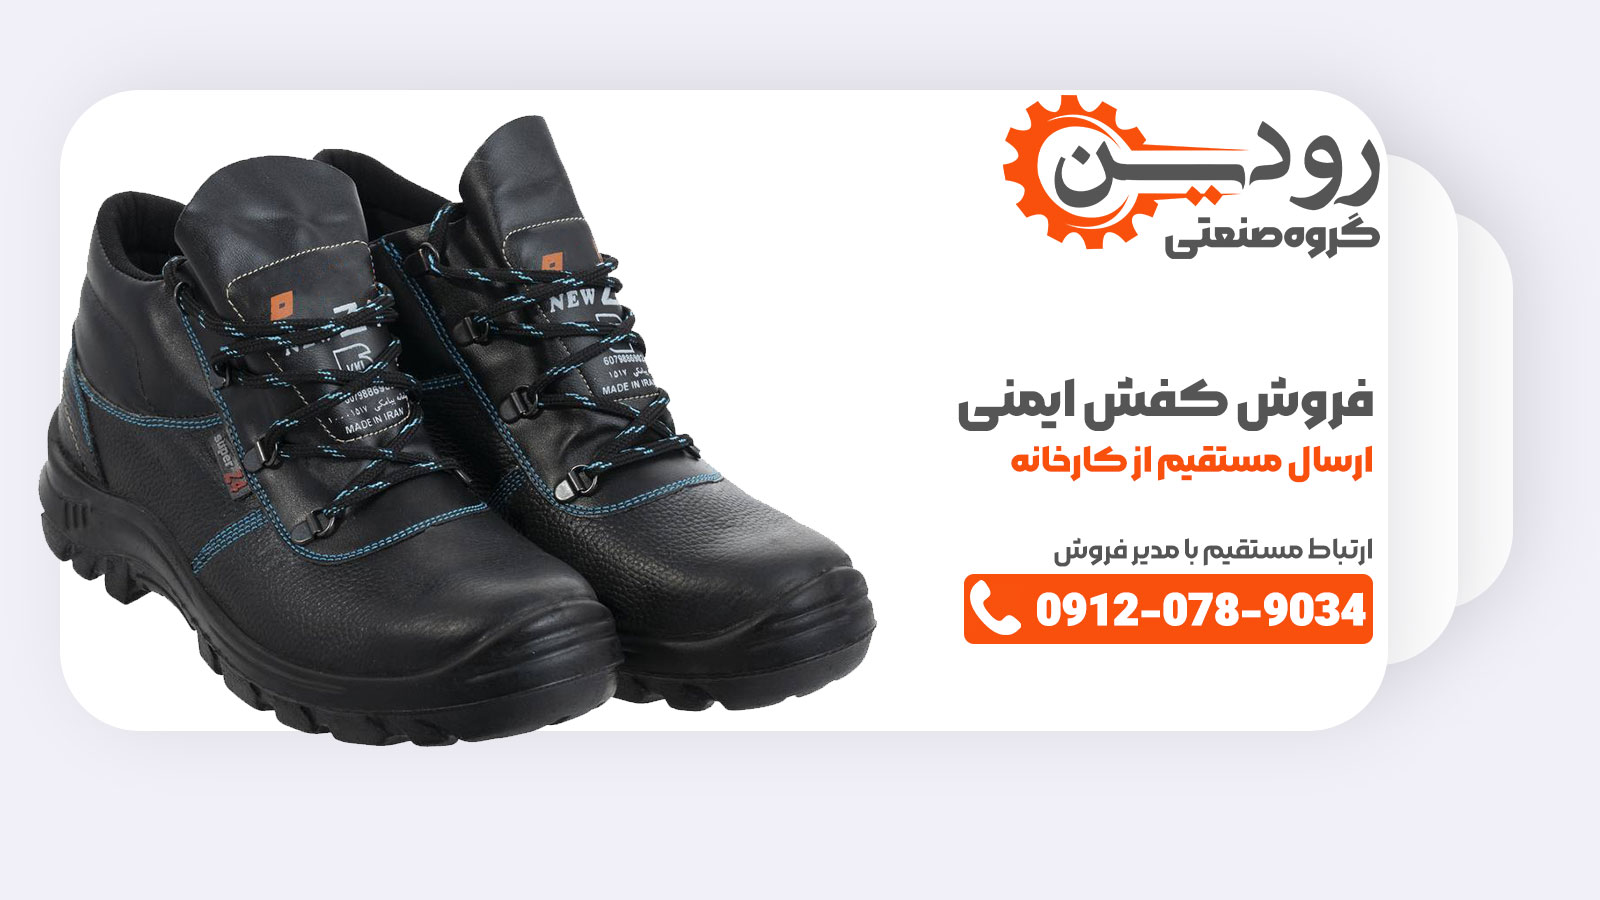 مشهد یکی از بزرگترین شهرهایی است که در زمینه فروش مستقیم از کارخانه تولید کفش ایمنی فعالیت دارد.